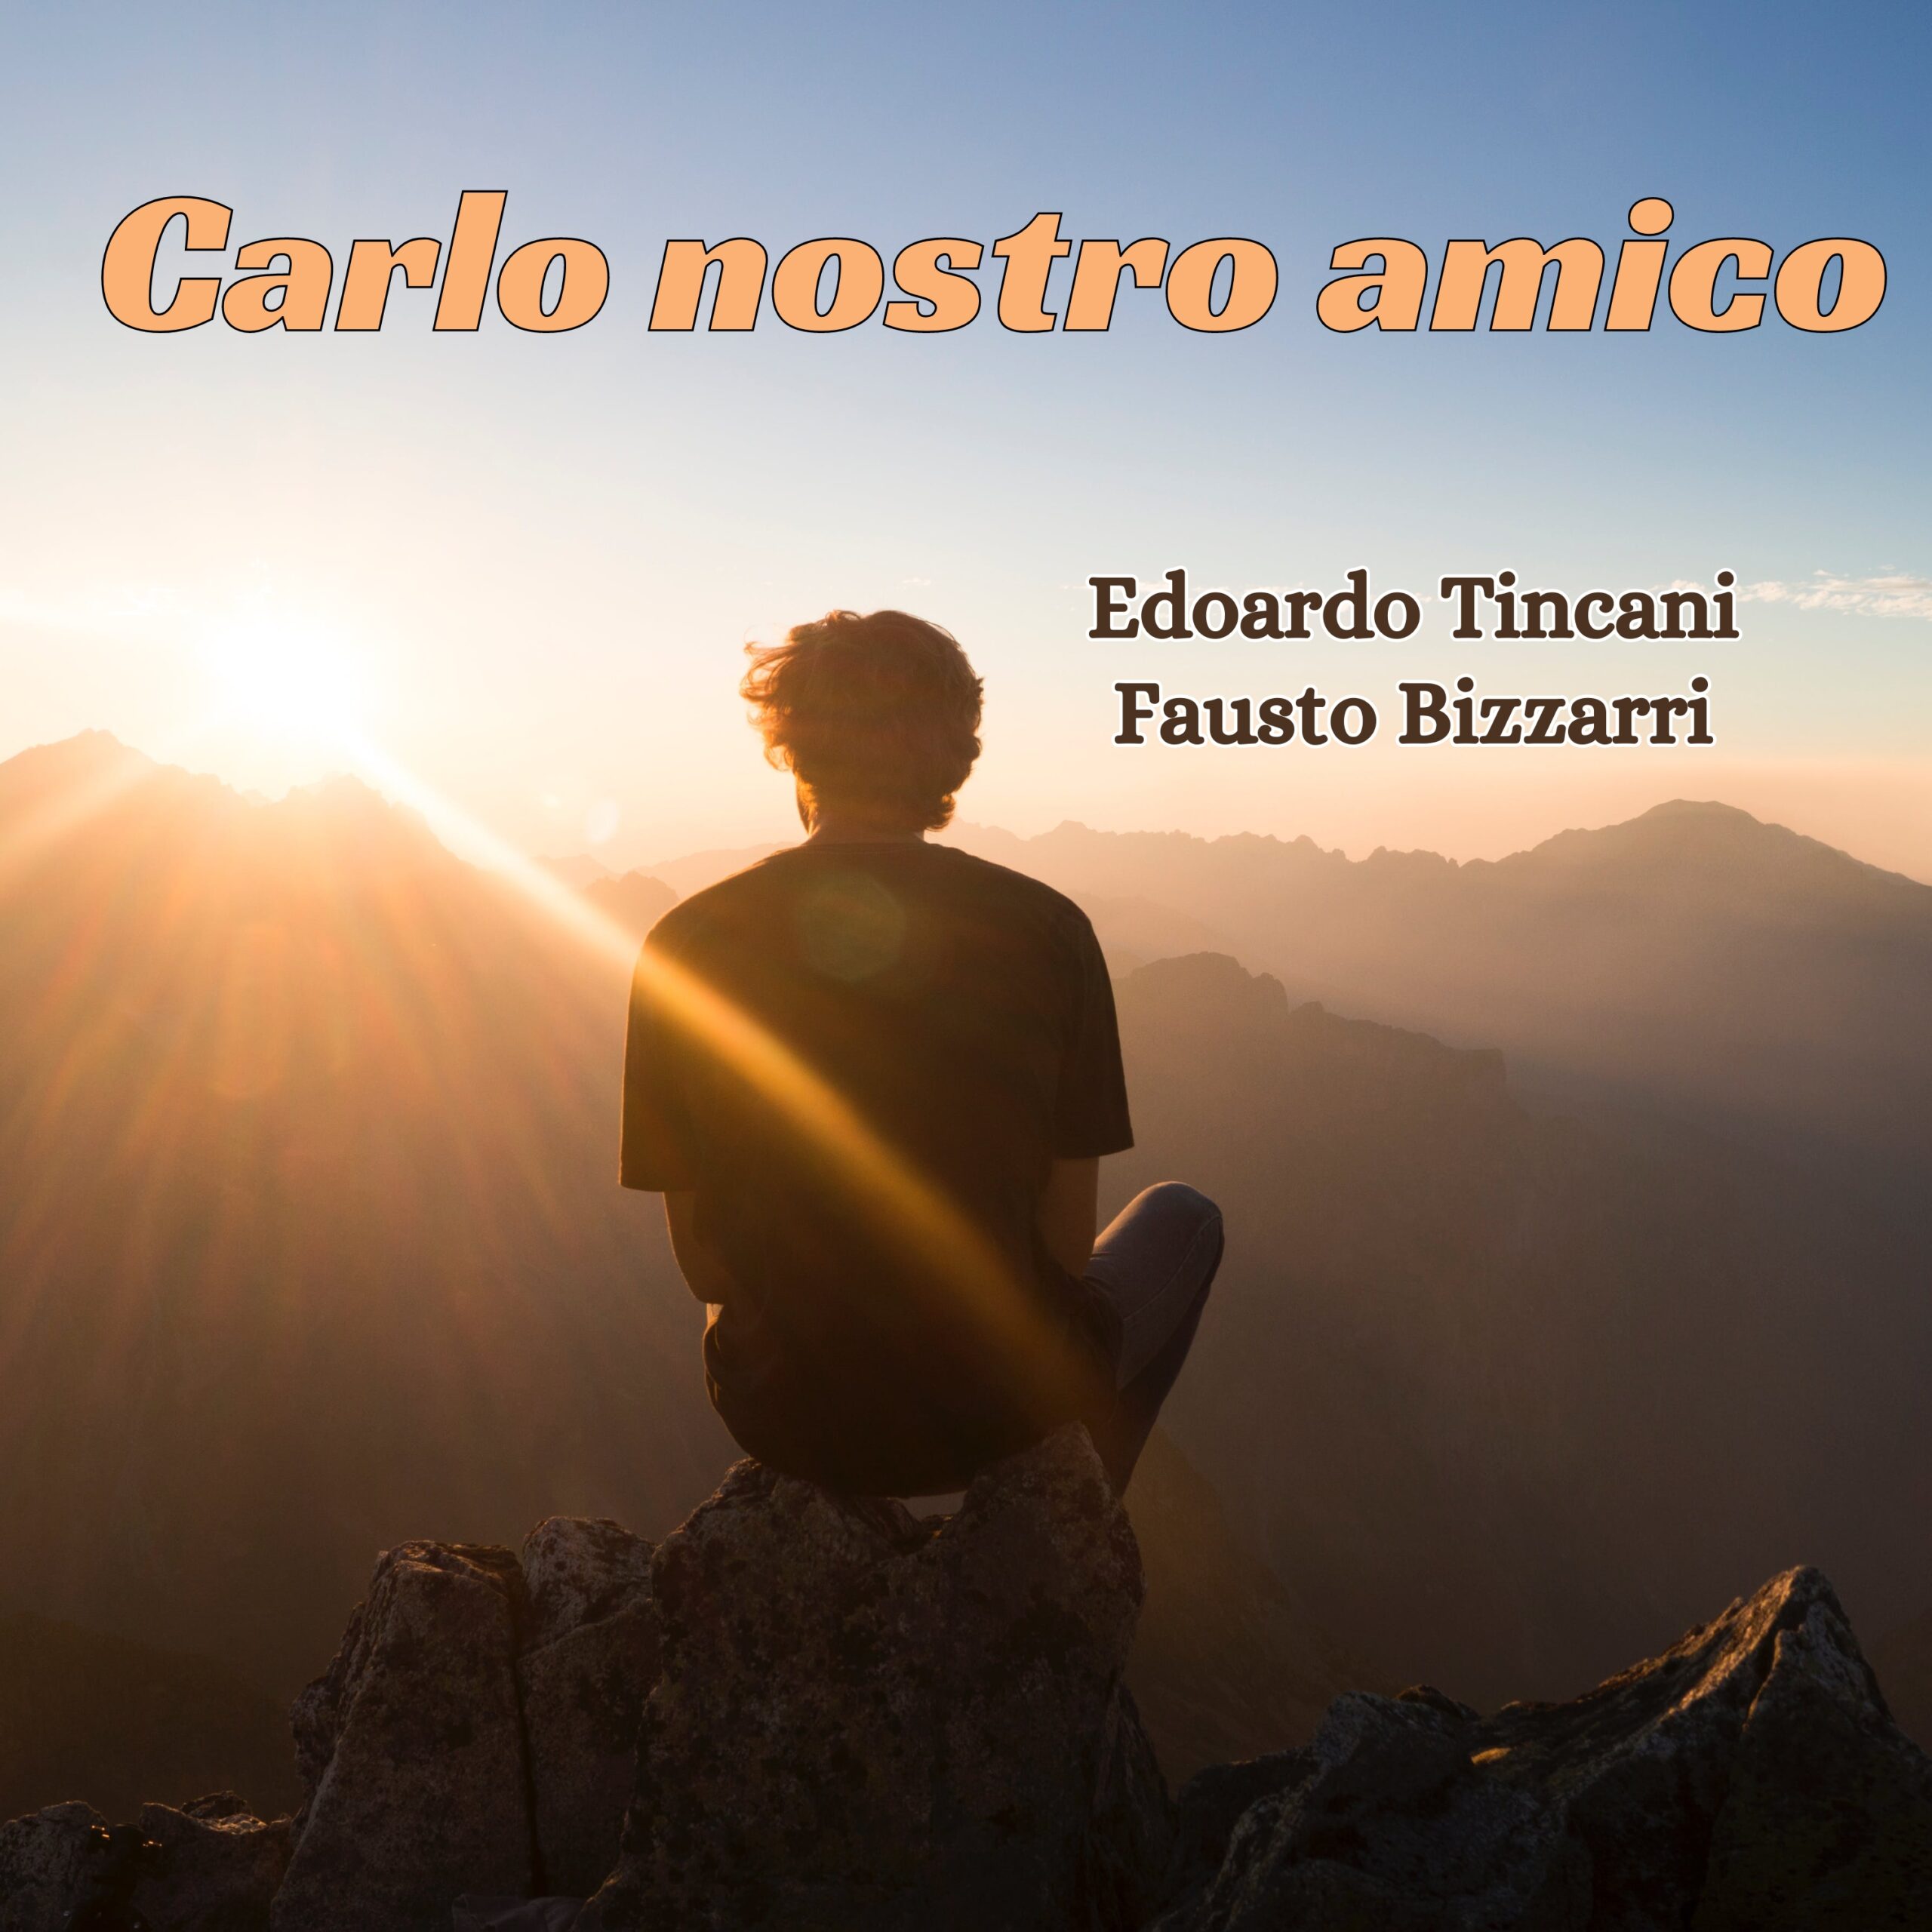 Al momento stai visualizzando Carlo nostro amico, l’ultimo struggente brano di Edoardo Tincani e Fausto Bizzarri